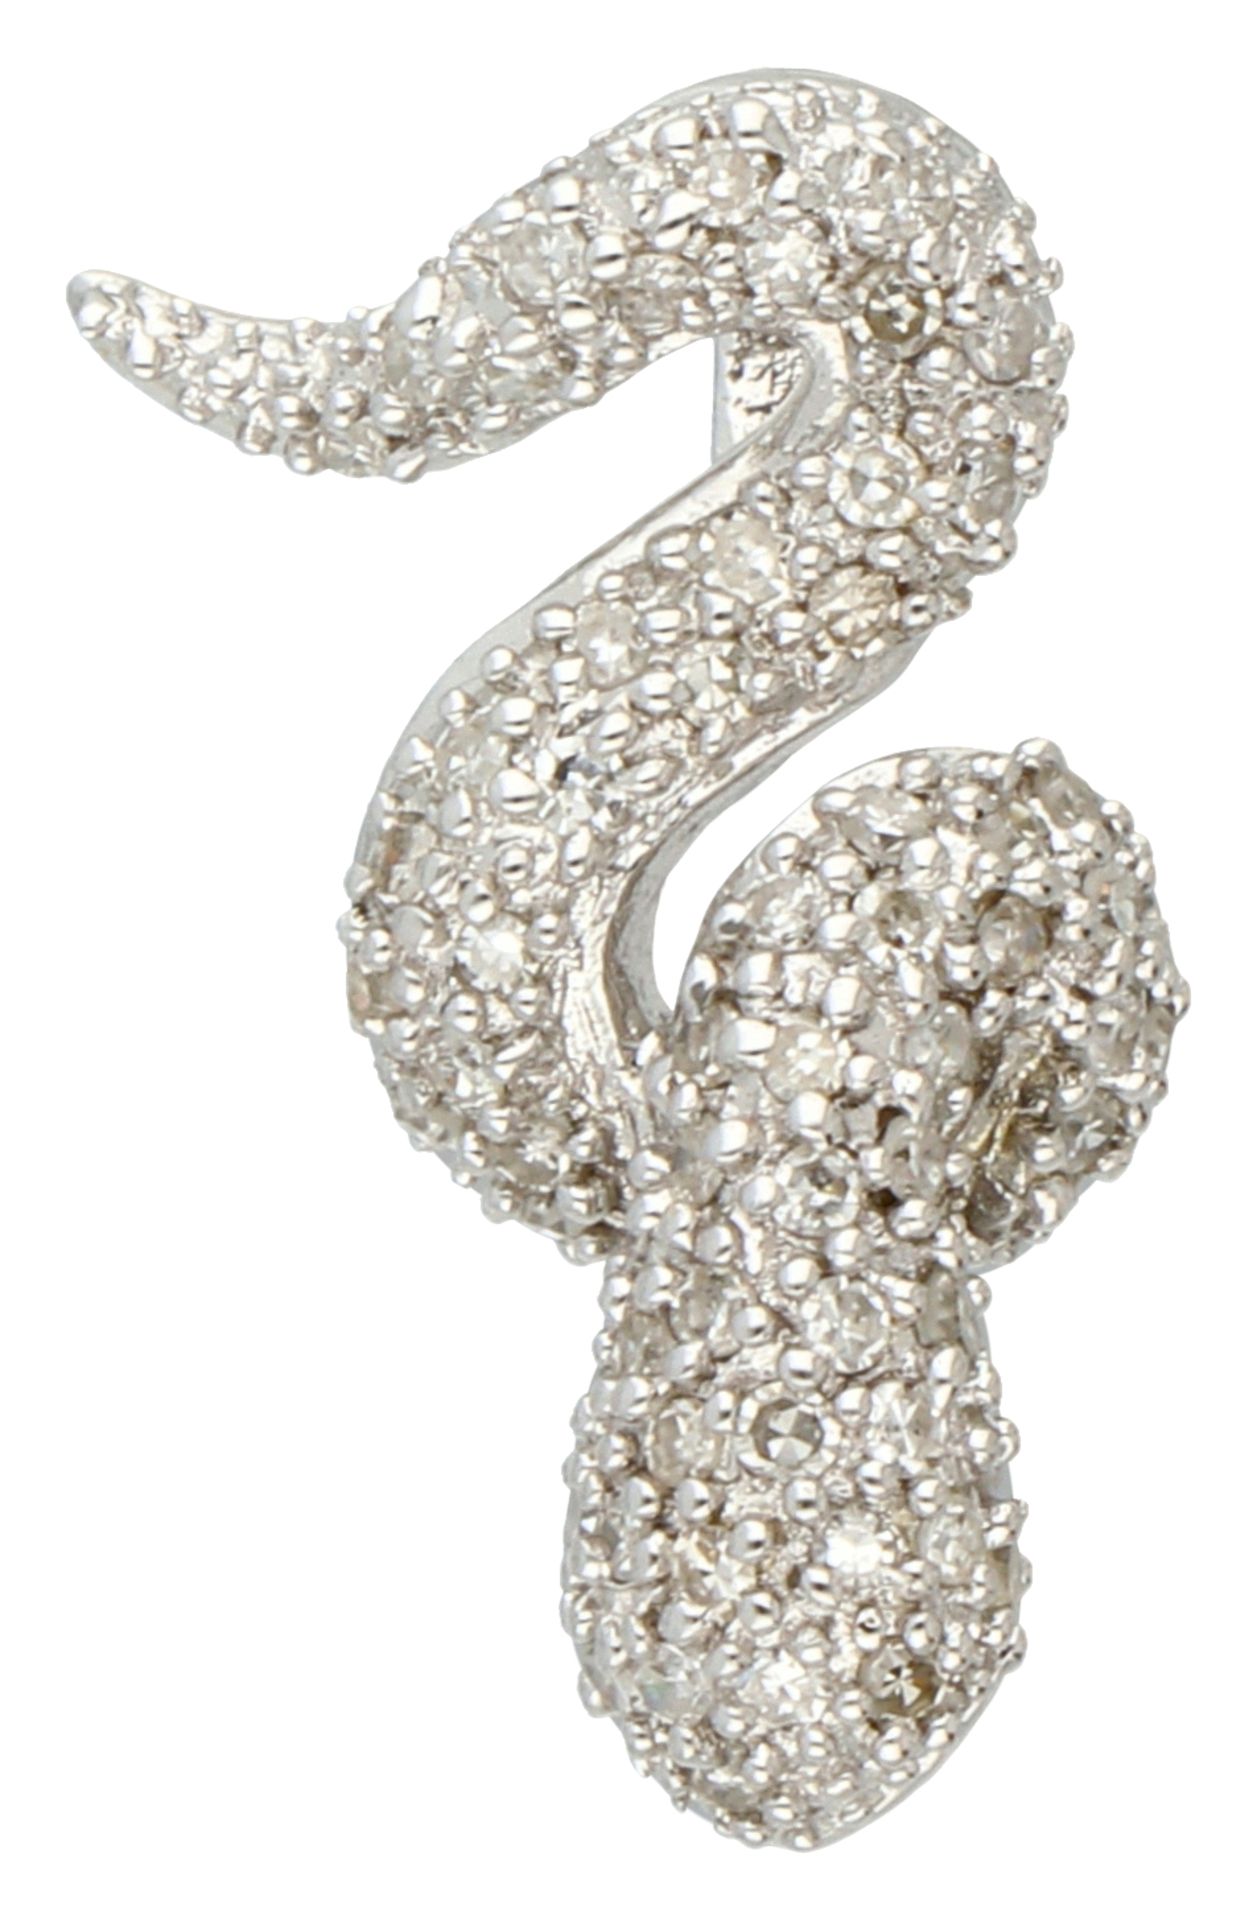 14K White gold snake pendant set with diamond.